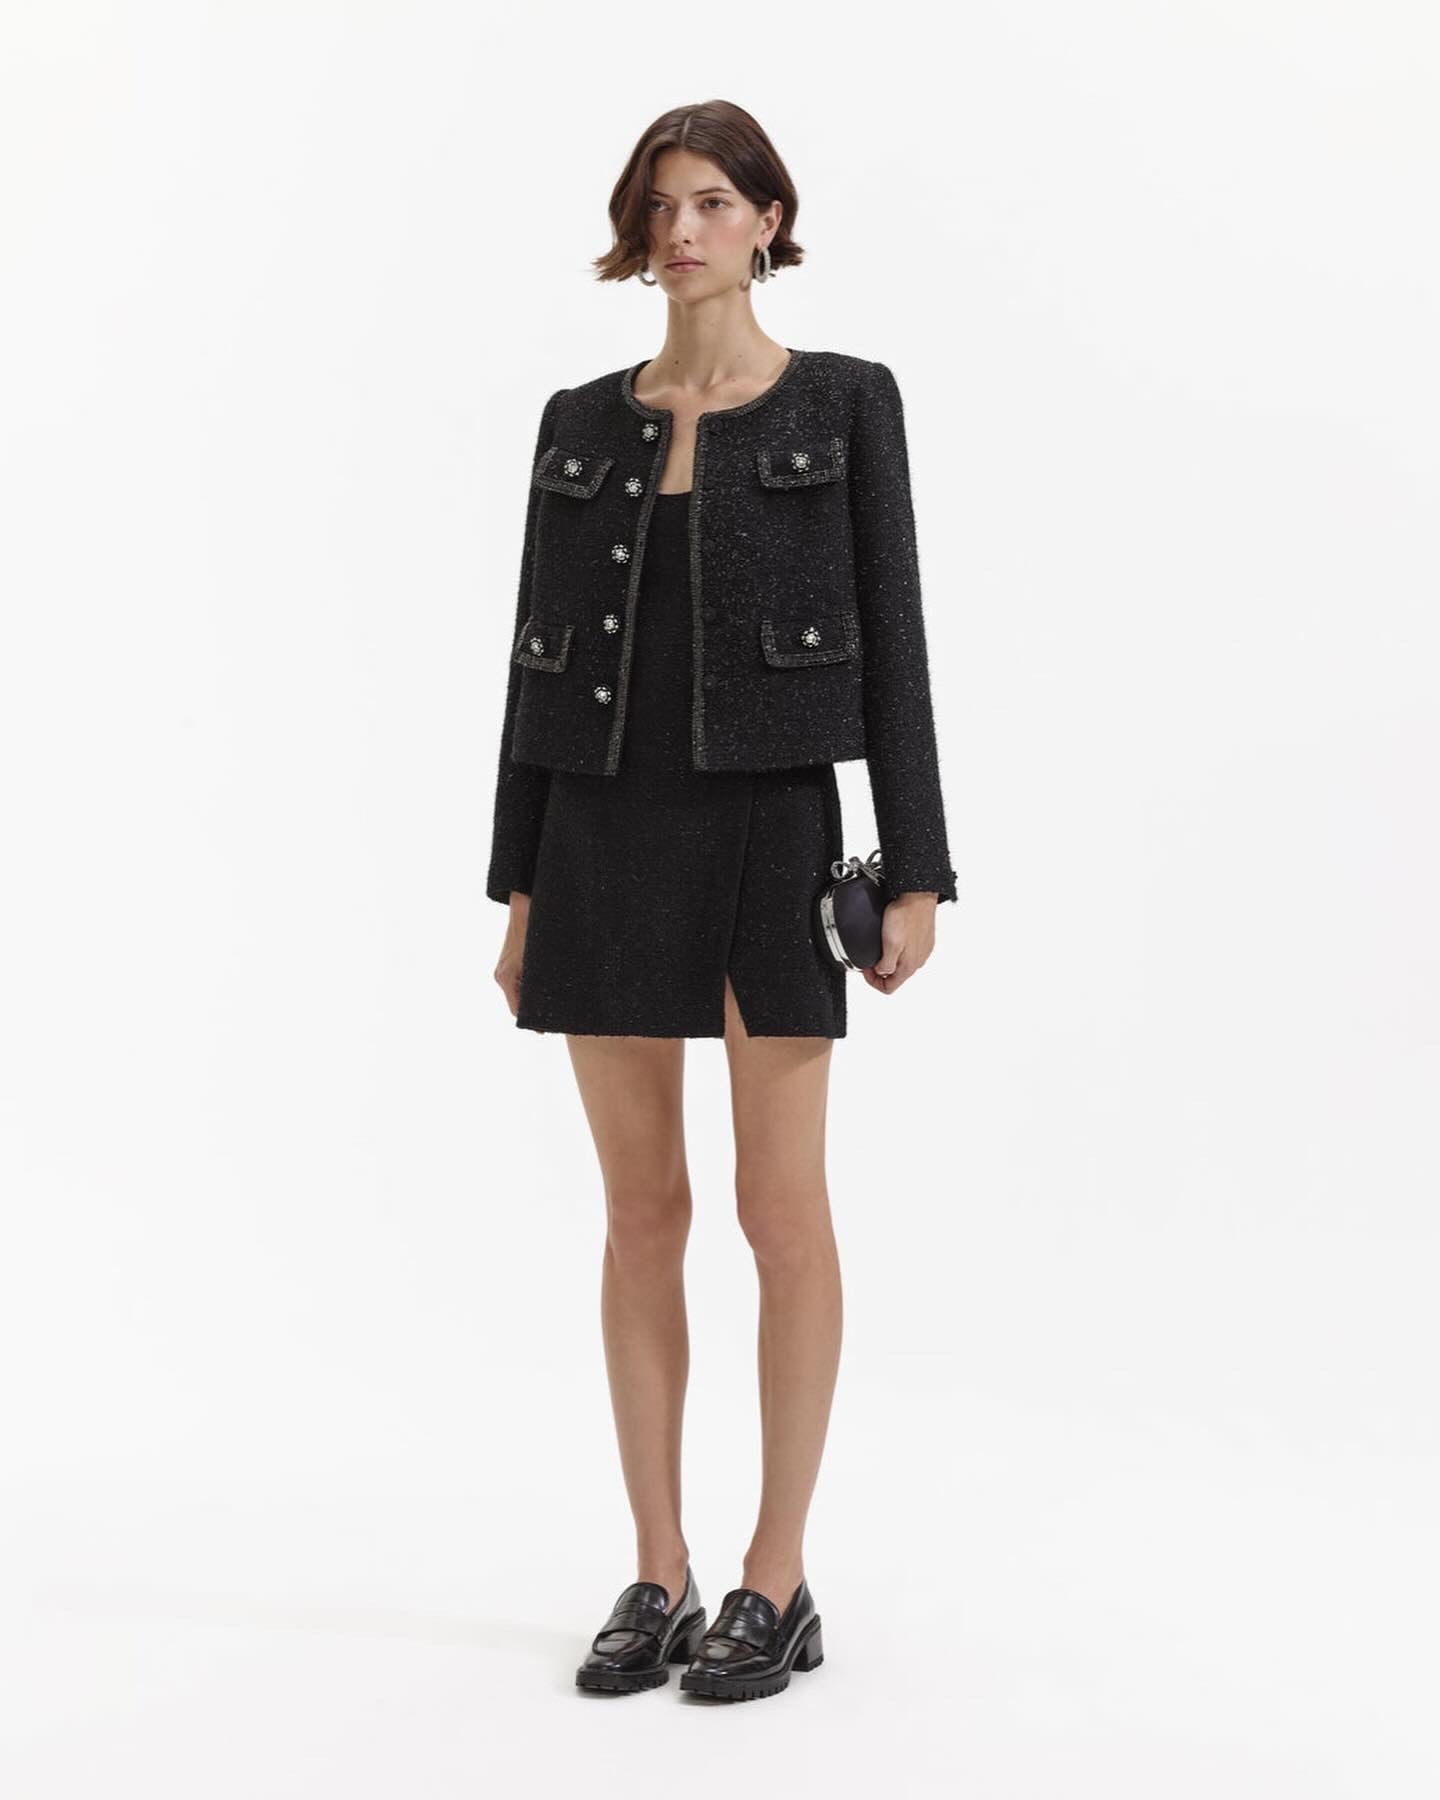 SP Black Boucle Mini Dress & Jacket